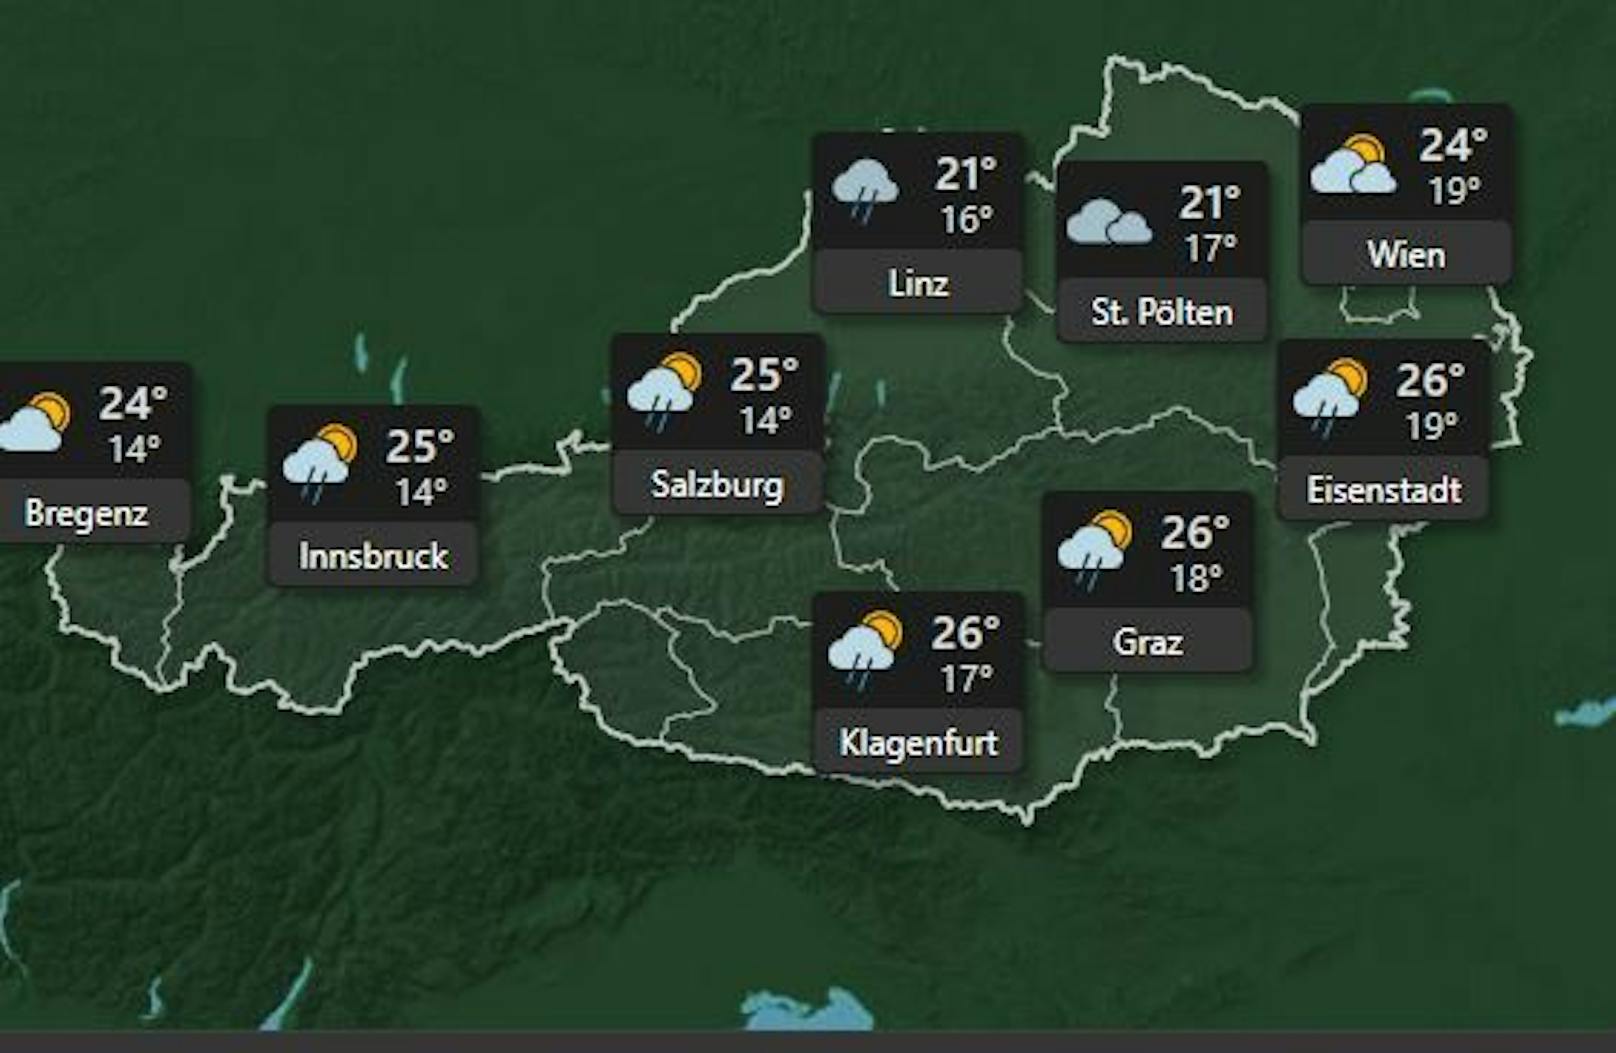 <strong>Samstag 2. Juli:</strong> Am Samstag ist es bewölkt und es kann zu Schauern und Gewitter in ganz Österreich kommen, die Temperaturen steigen auf maximal <strong>26 Grad in Klagenfurt, Graz und Eisenstadt.</strong>